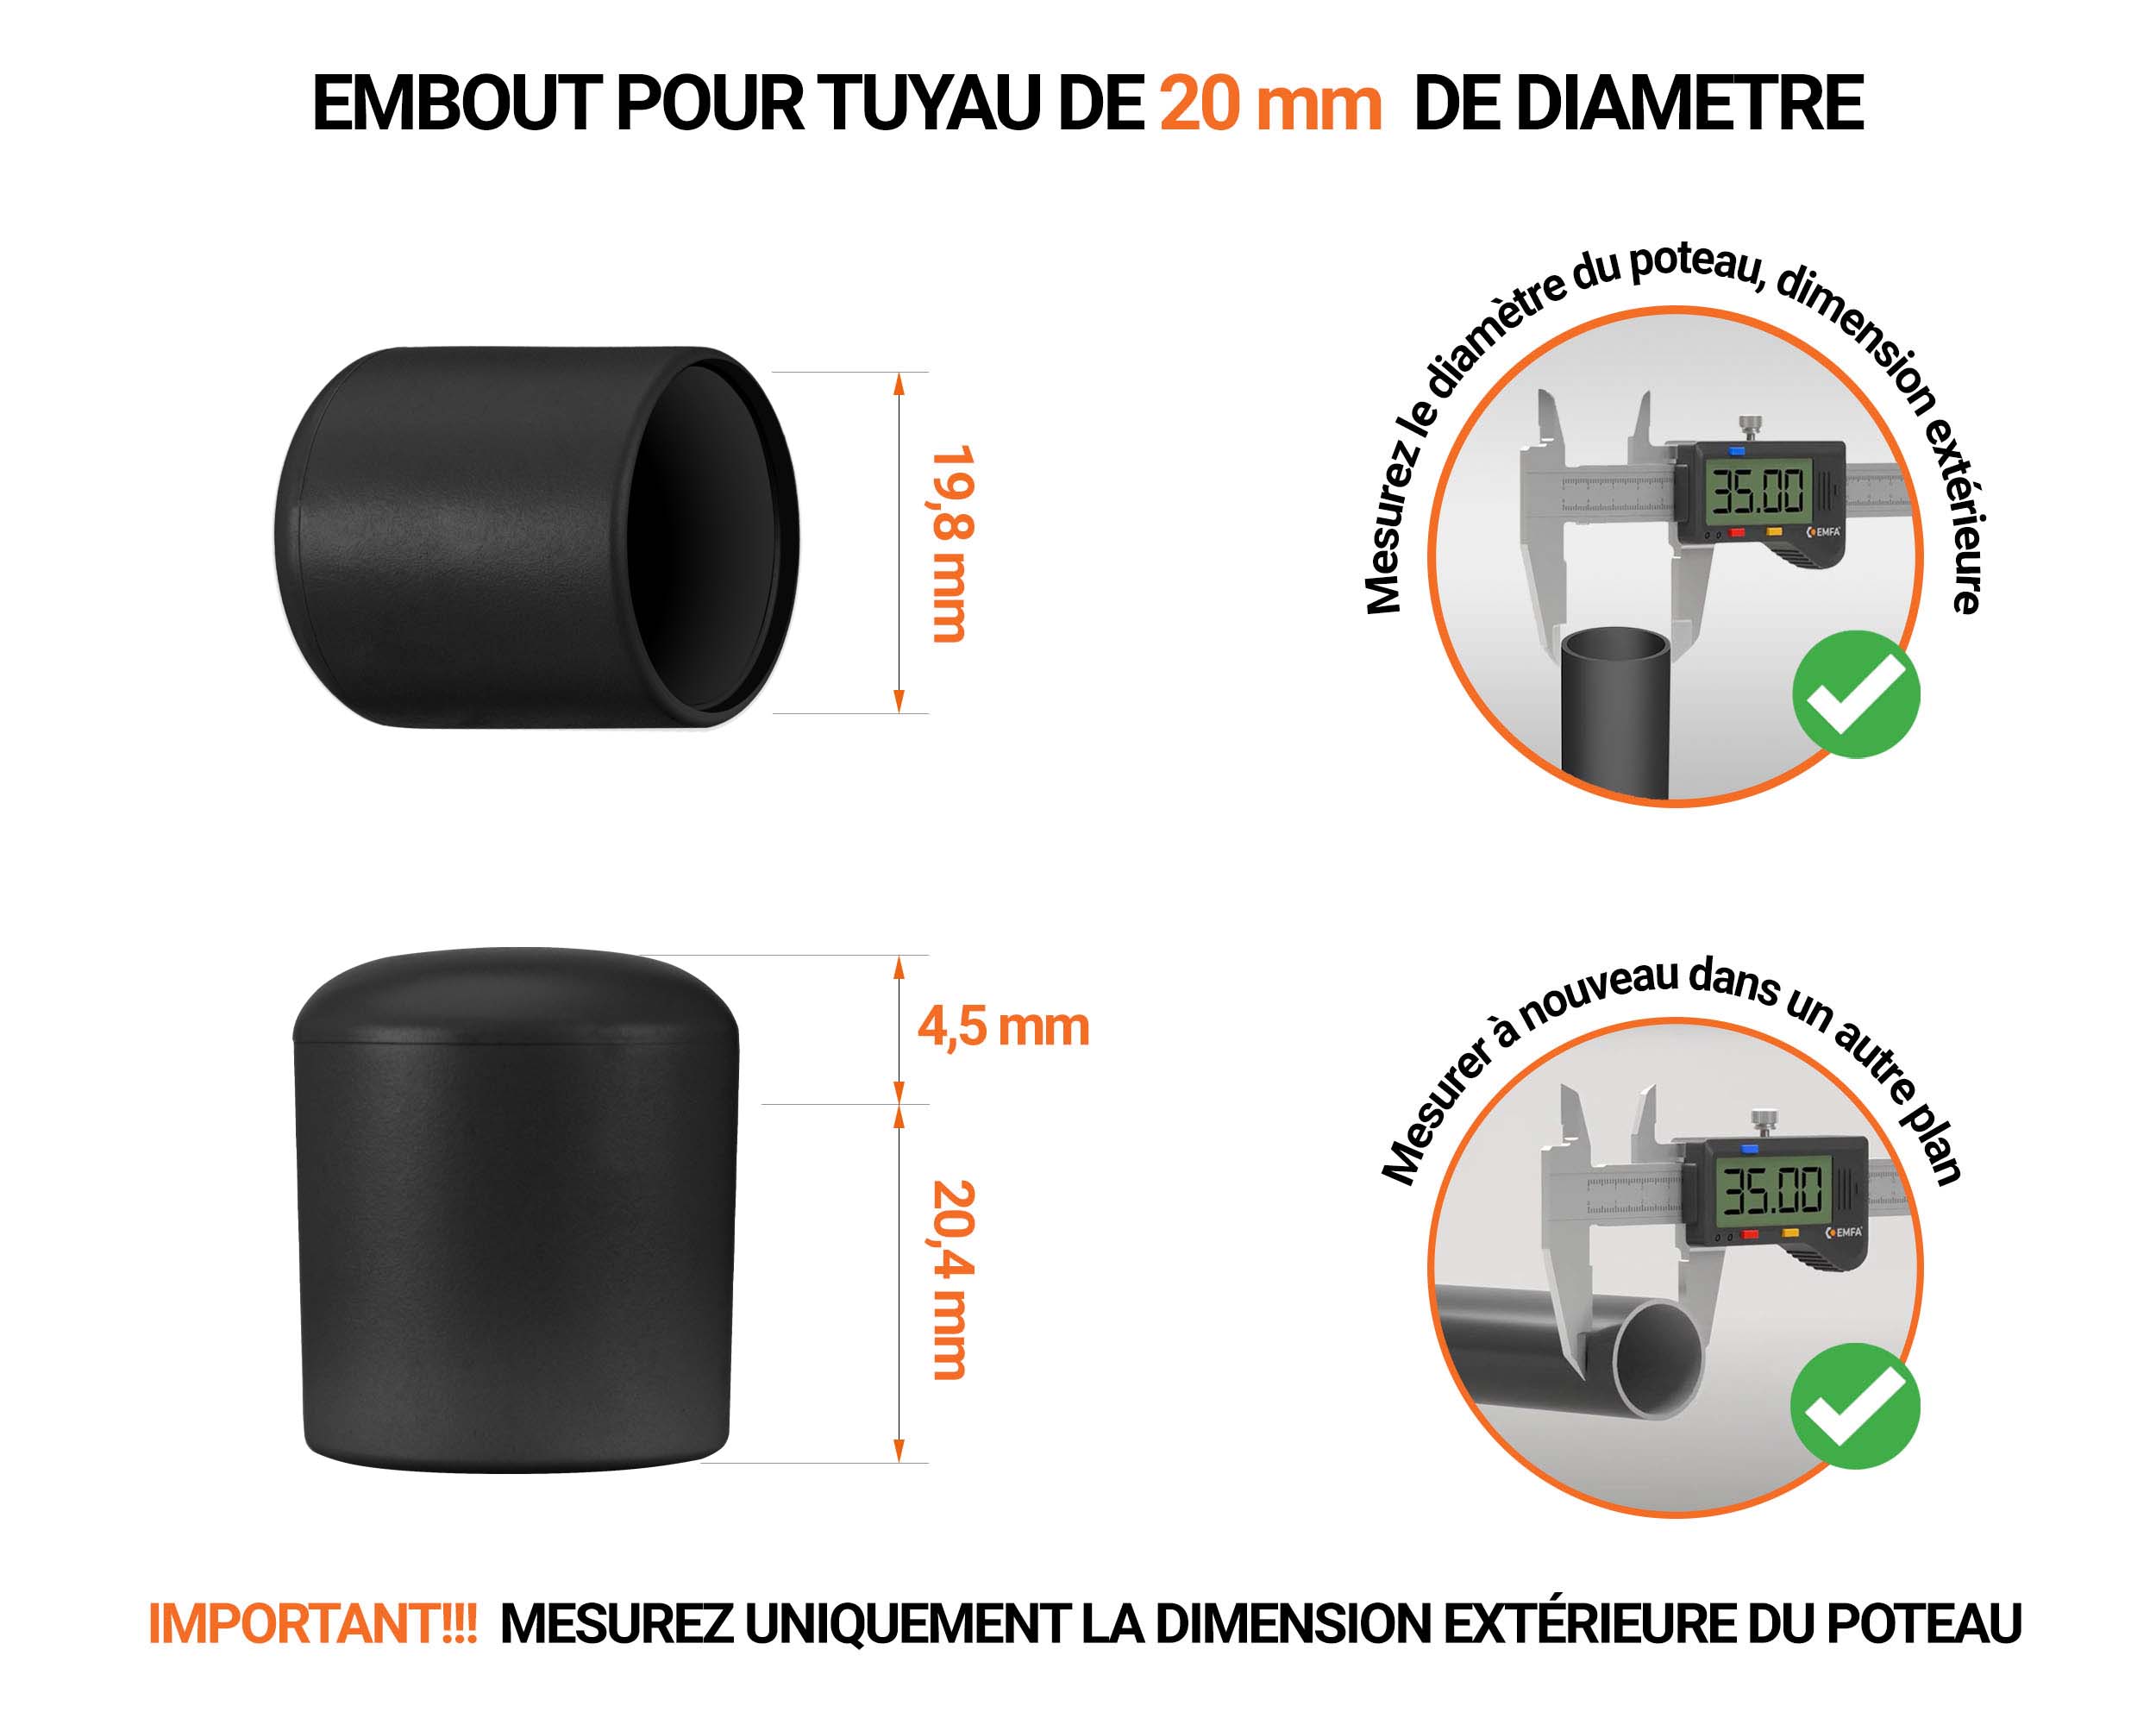 Embout blanc de diamètre extérieur 20 mm pour tube rond avec dimensions et guide de mesure correcte du bouchon plastique.